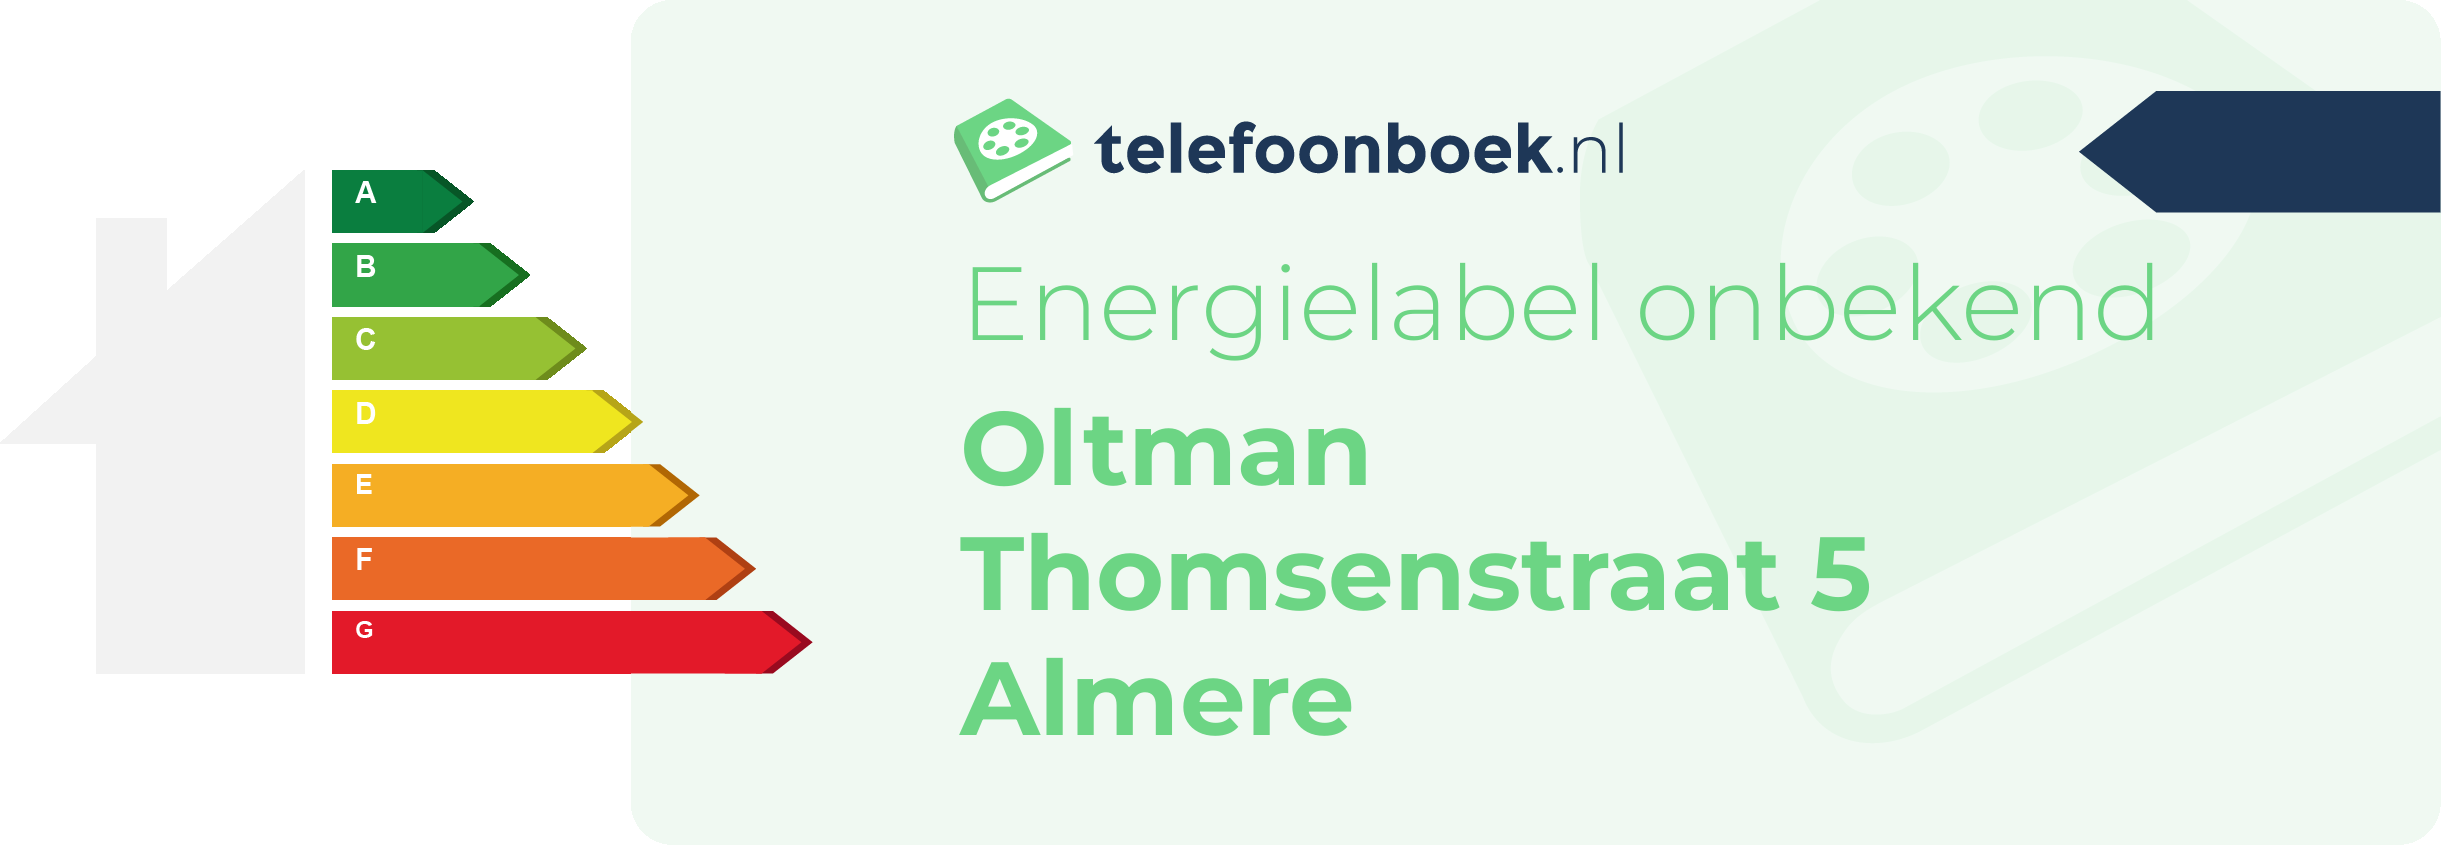 Energielabel Oltman Thomsenstraat 5 Almere